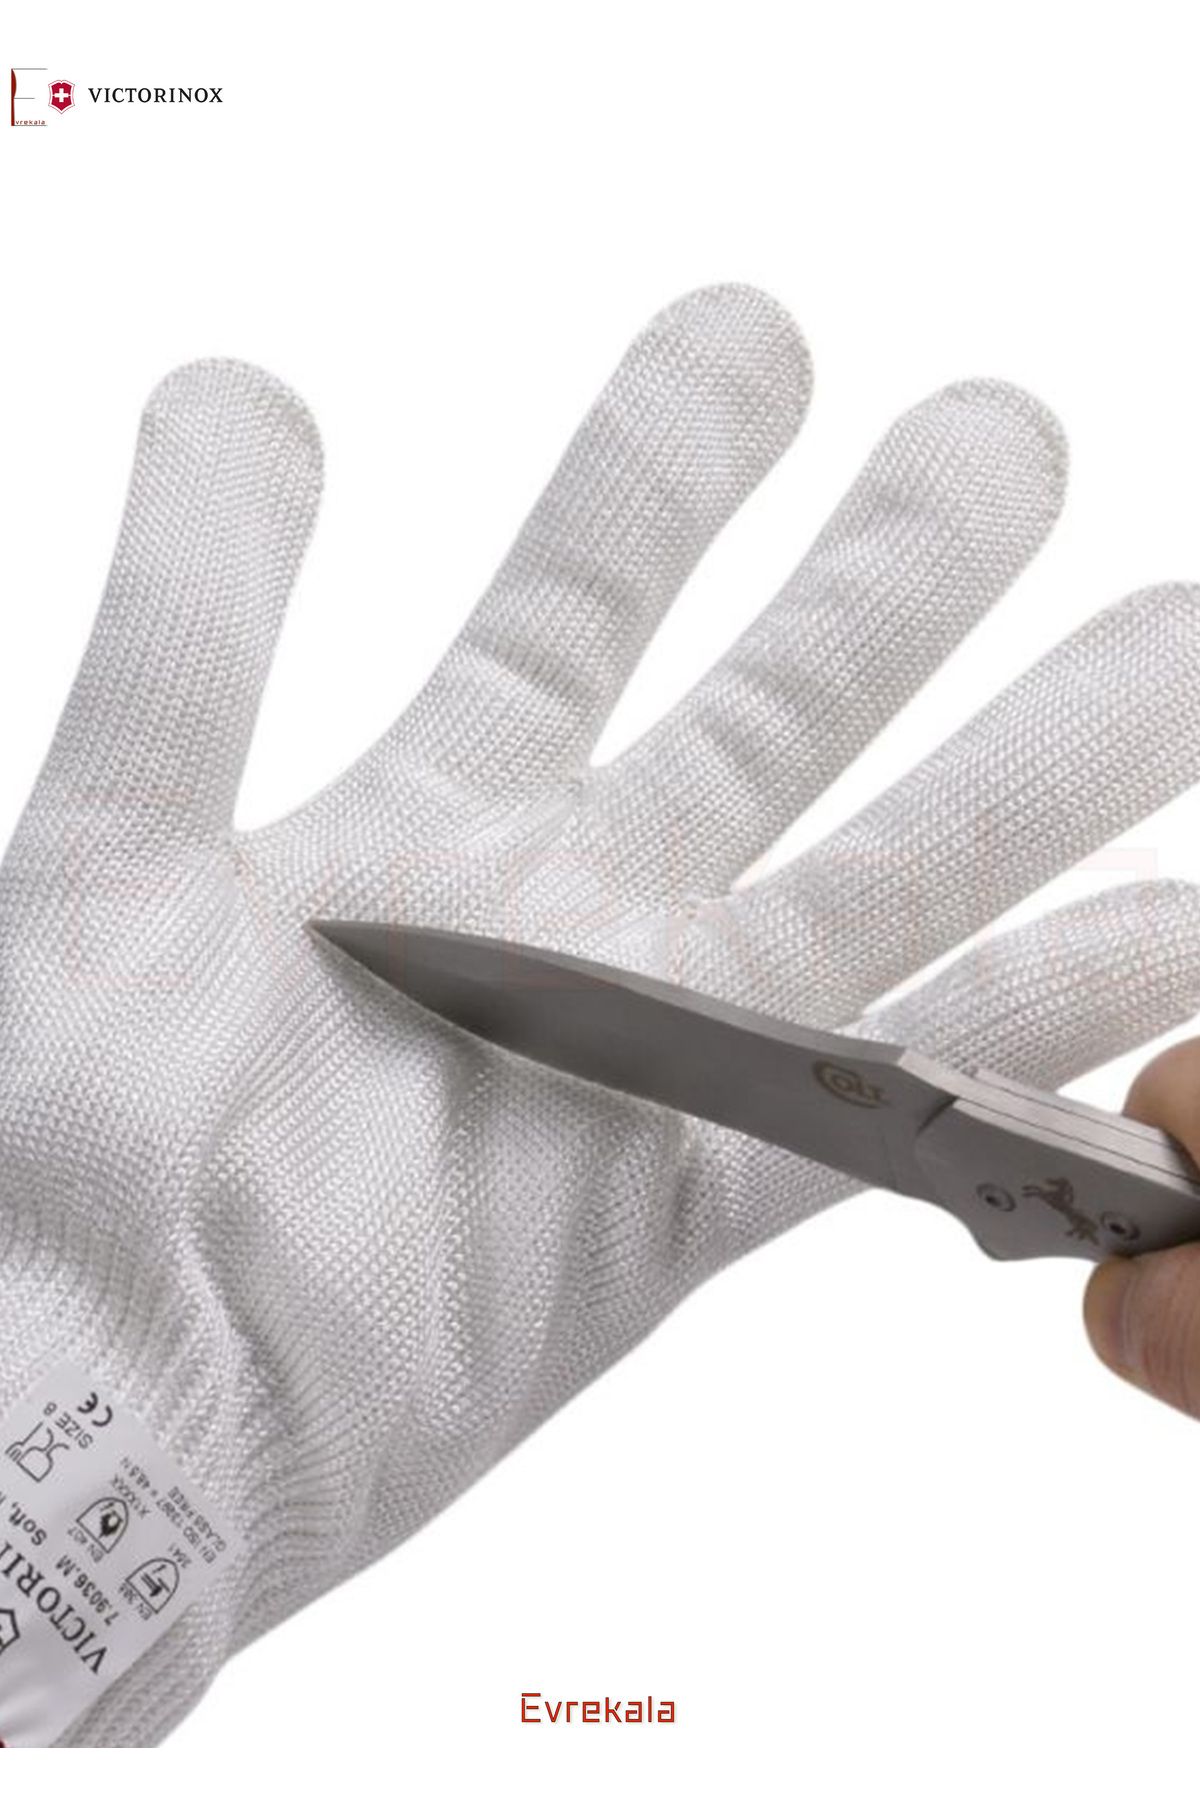 VICTORINOX Evrekala Kesilmez Özel Eldiven Victorinox Dayanıklı Cut Proof Gloves -Yetkili Evrekala- Yeni